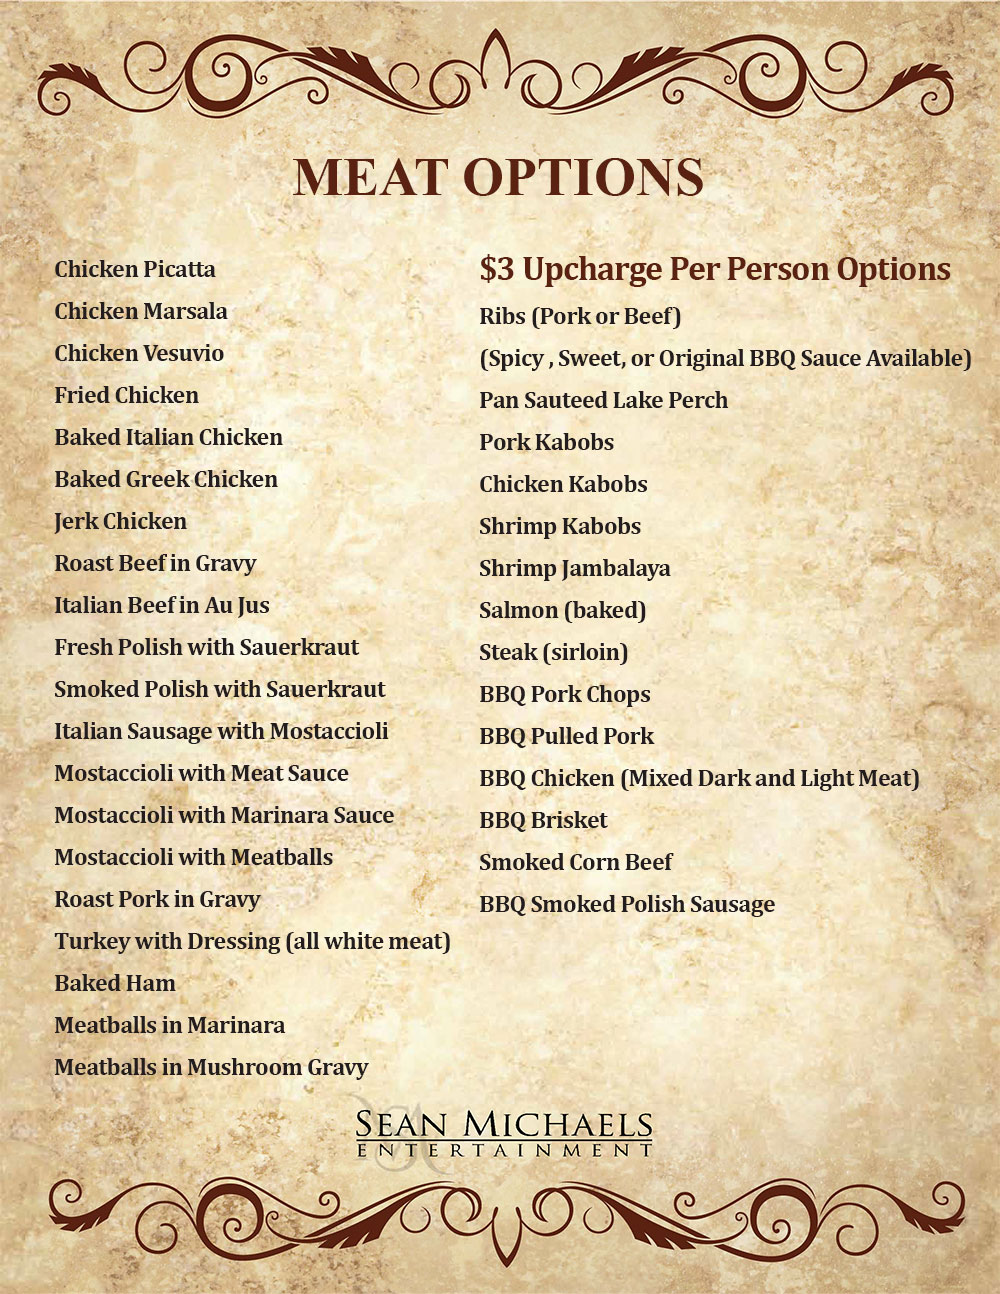 Sean-Michaels-Entertainment-meat-option-menu-2